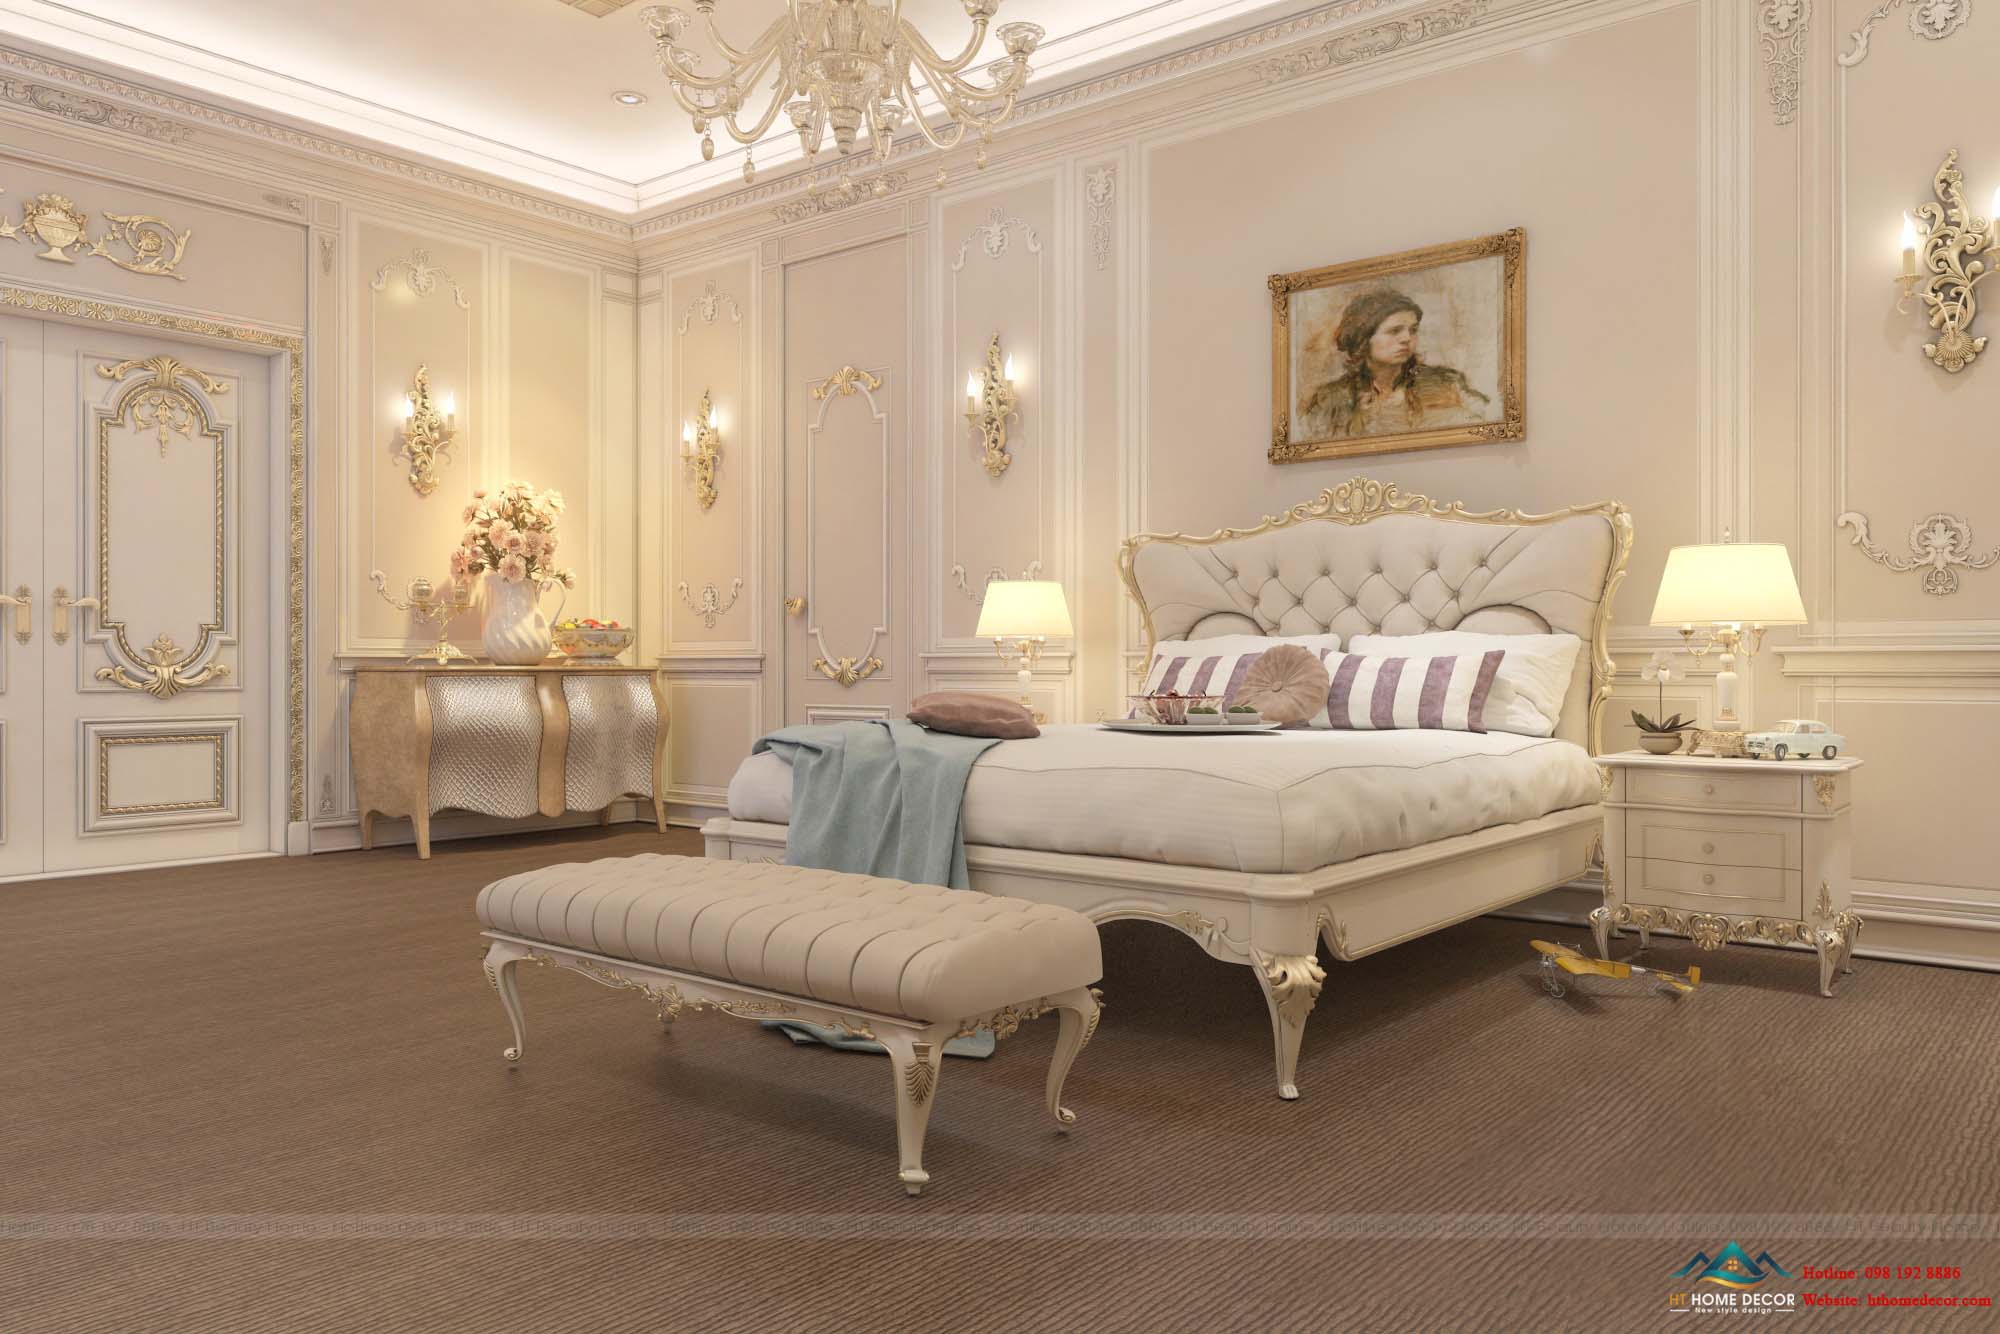 Nội thất phòng ngủ theo hơi hướng phong cách tân cổ điển sang trọng với một chiếc giường đẹp được thiết kế tỉ mỉ với những đường nét họa tiết vô cùng sang trọng.